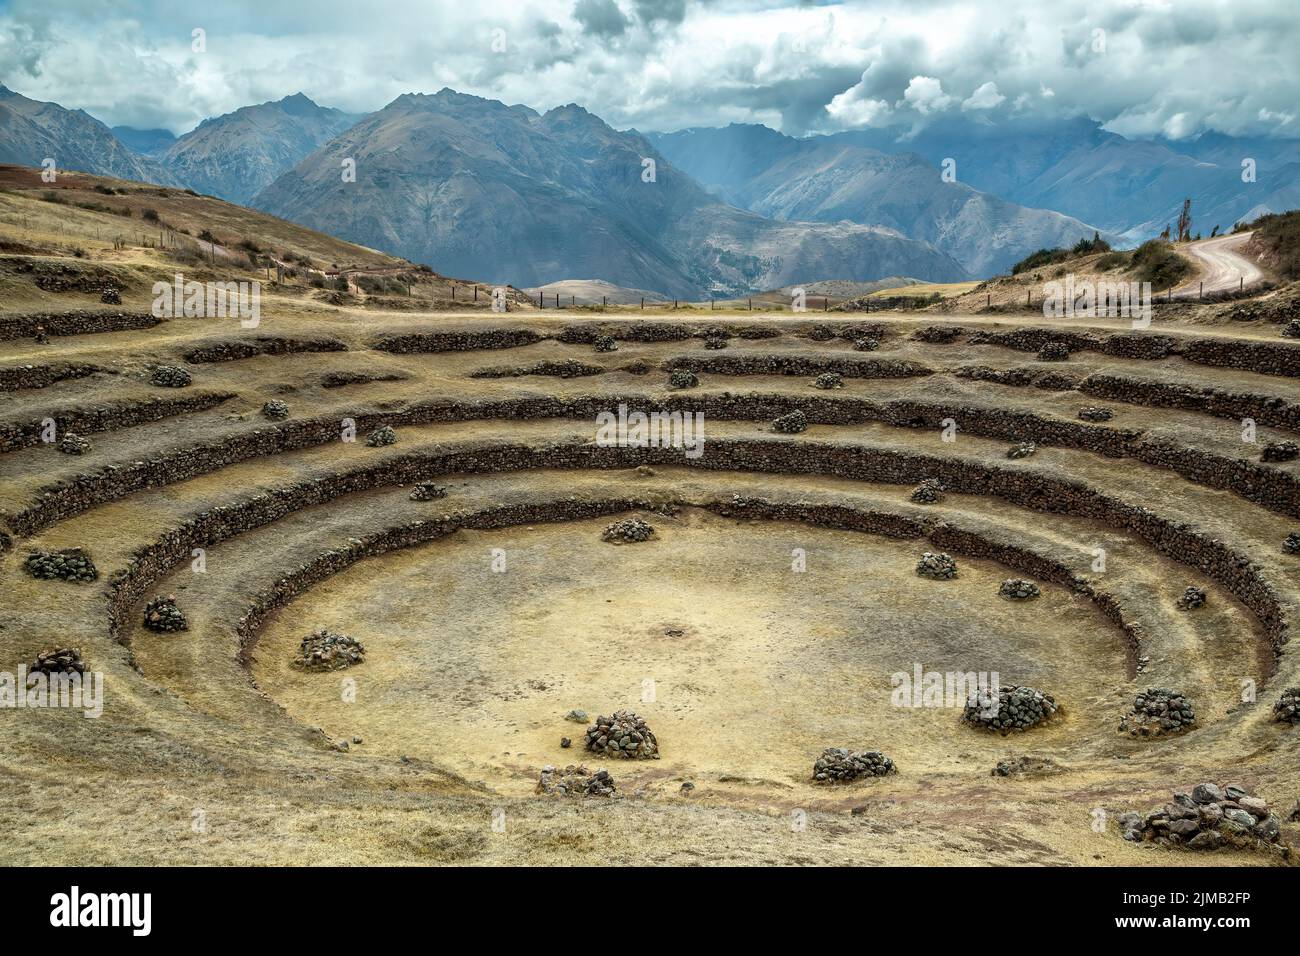 Las terrazas agrícolas concéntricas, ruinas incas de Moray, Cusco, Perú Foto de stock